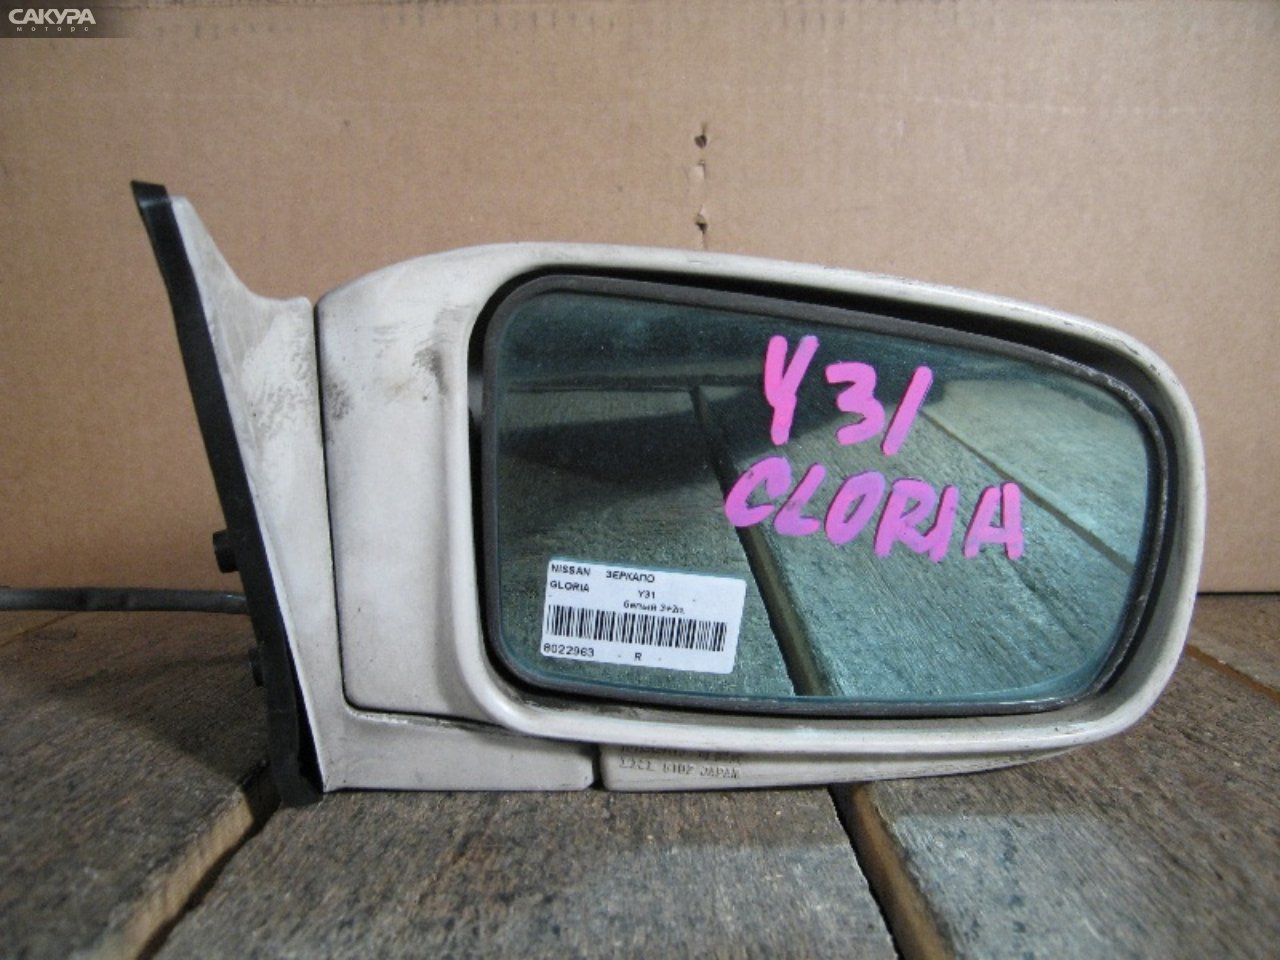 Зеркало боковое правое Nissan Gloria Y31: купить в Сакура Абакан.